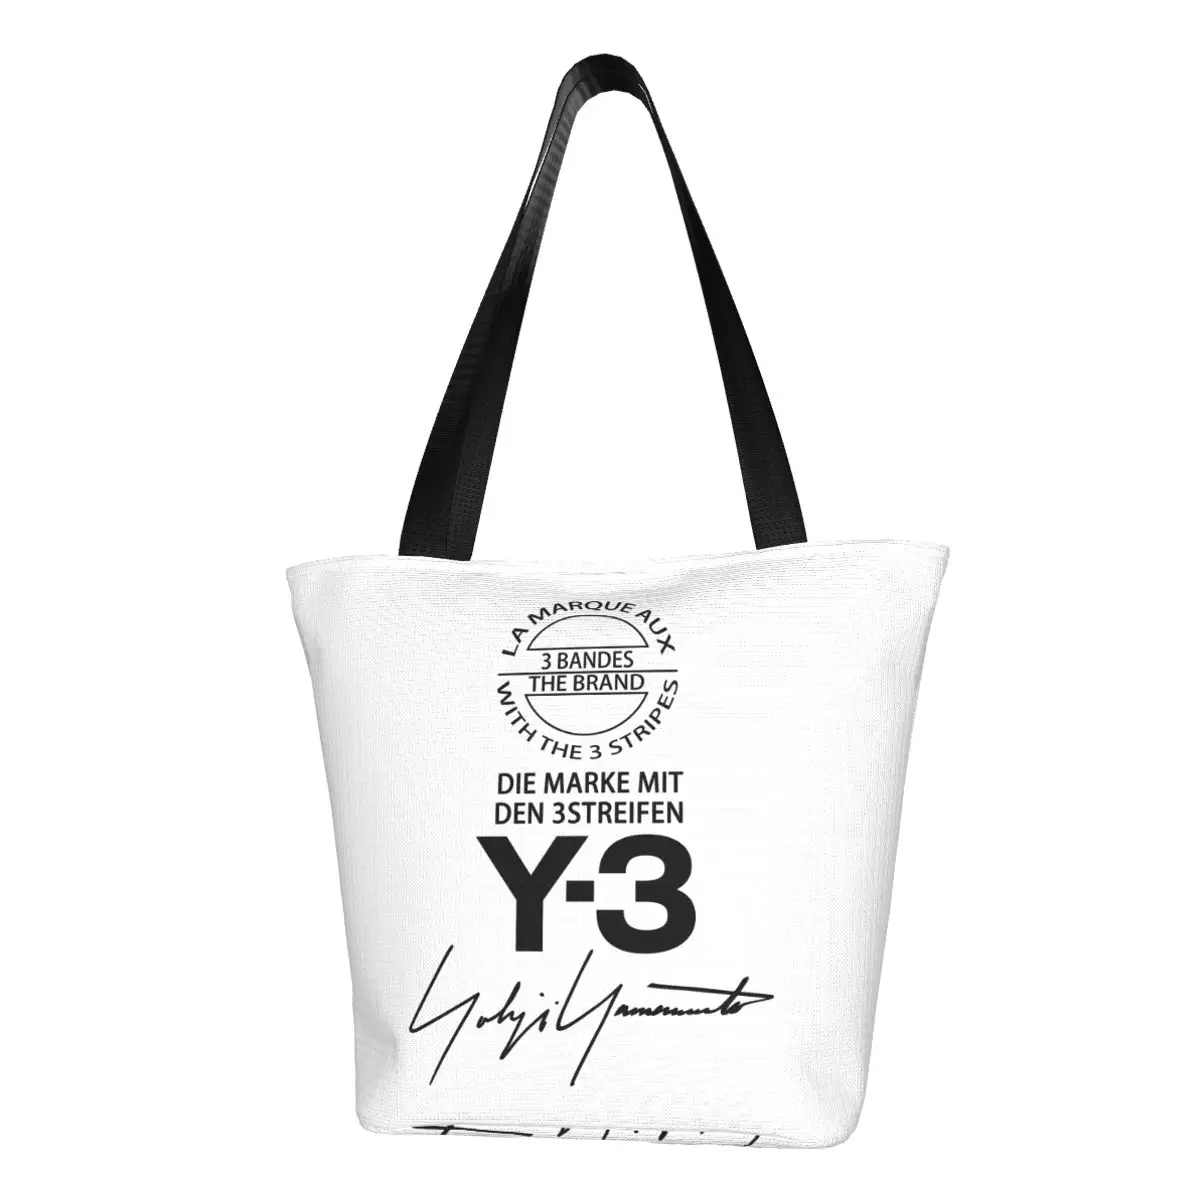 Изготовленная на заказ холщовая сумка для покупок Y3 Yohji Yamamoto для женщин, перерабатывающая сумки для покупок в продуктовых магазинах